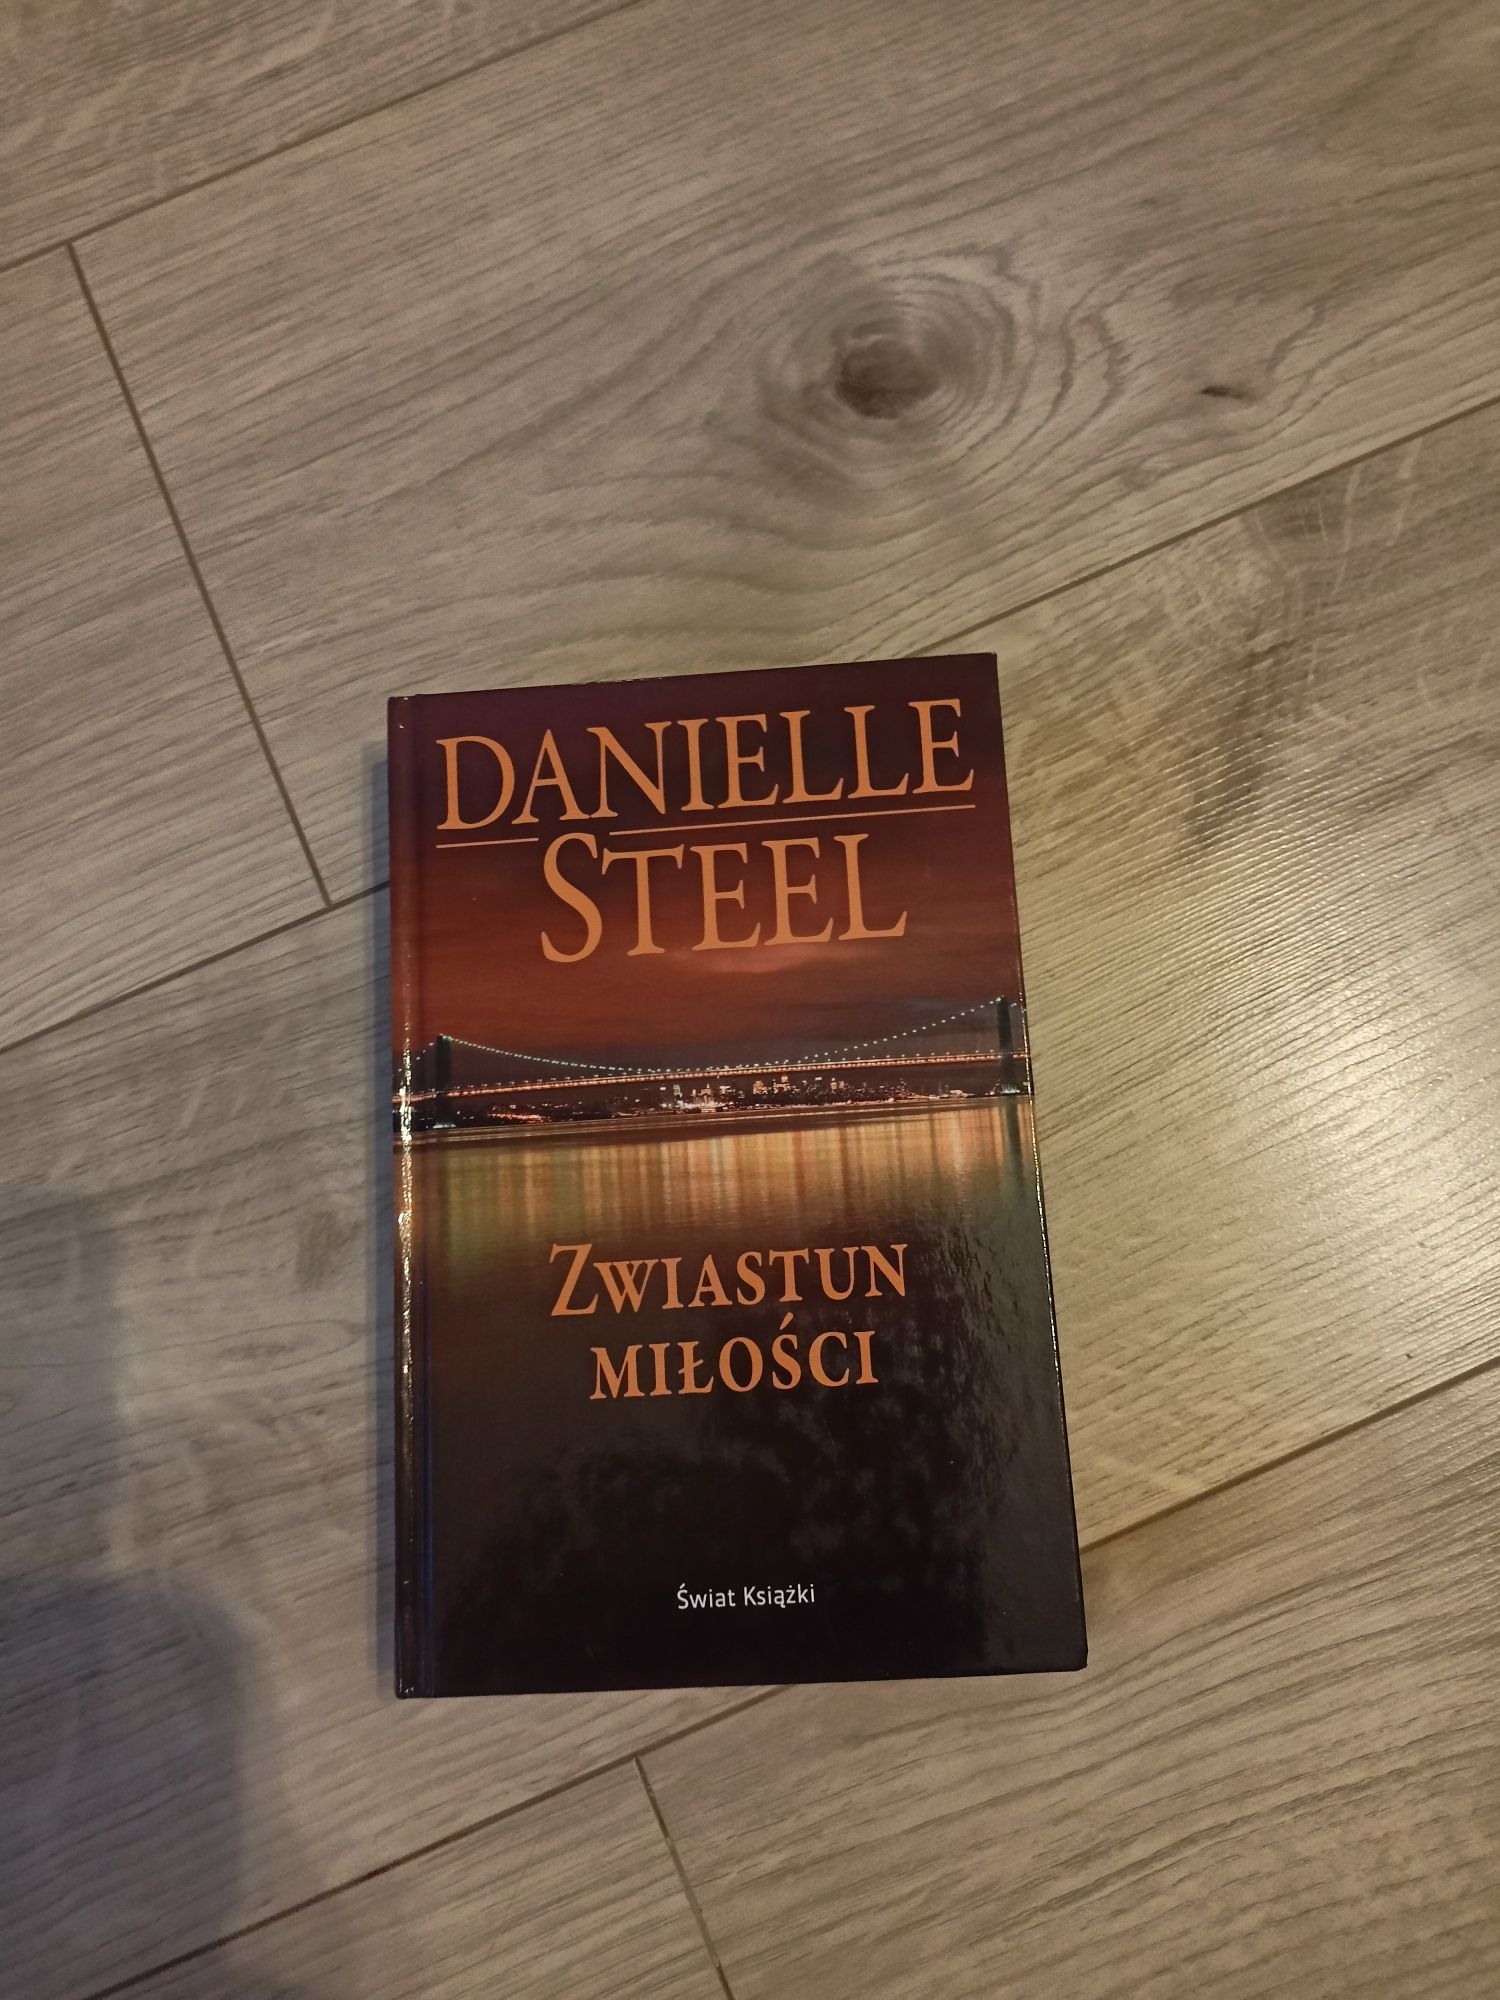 Książka Danielle Steel